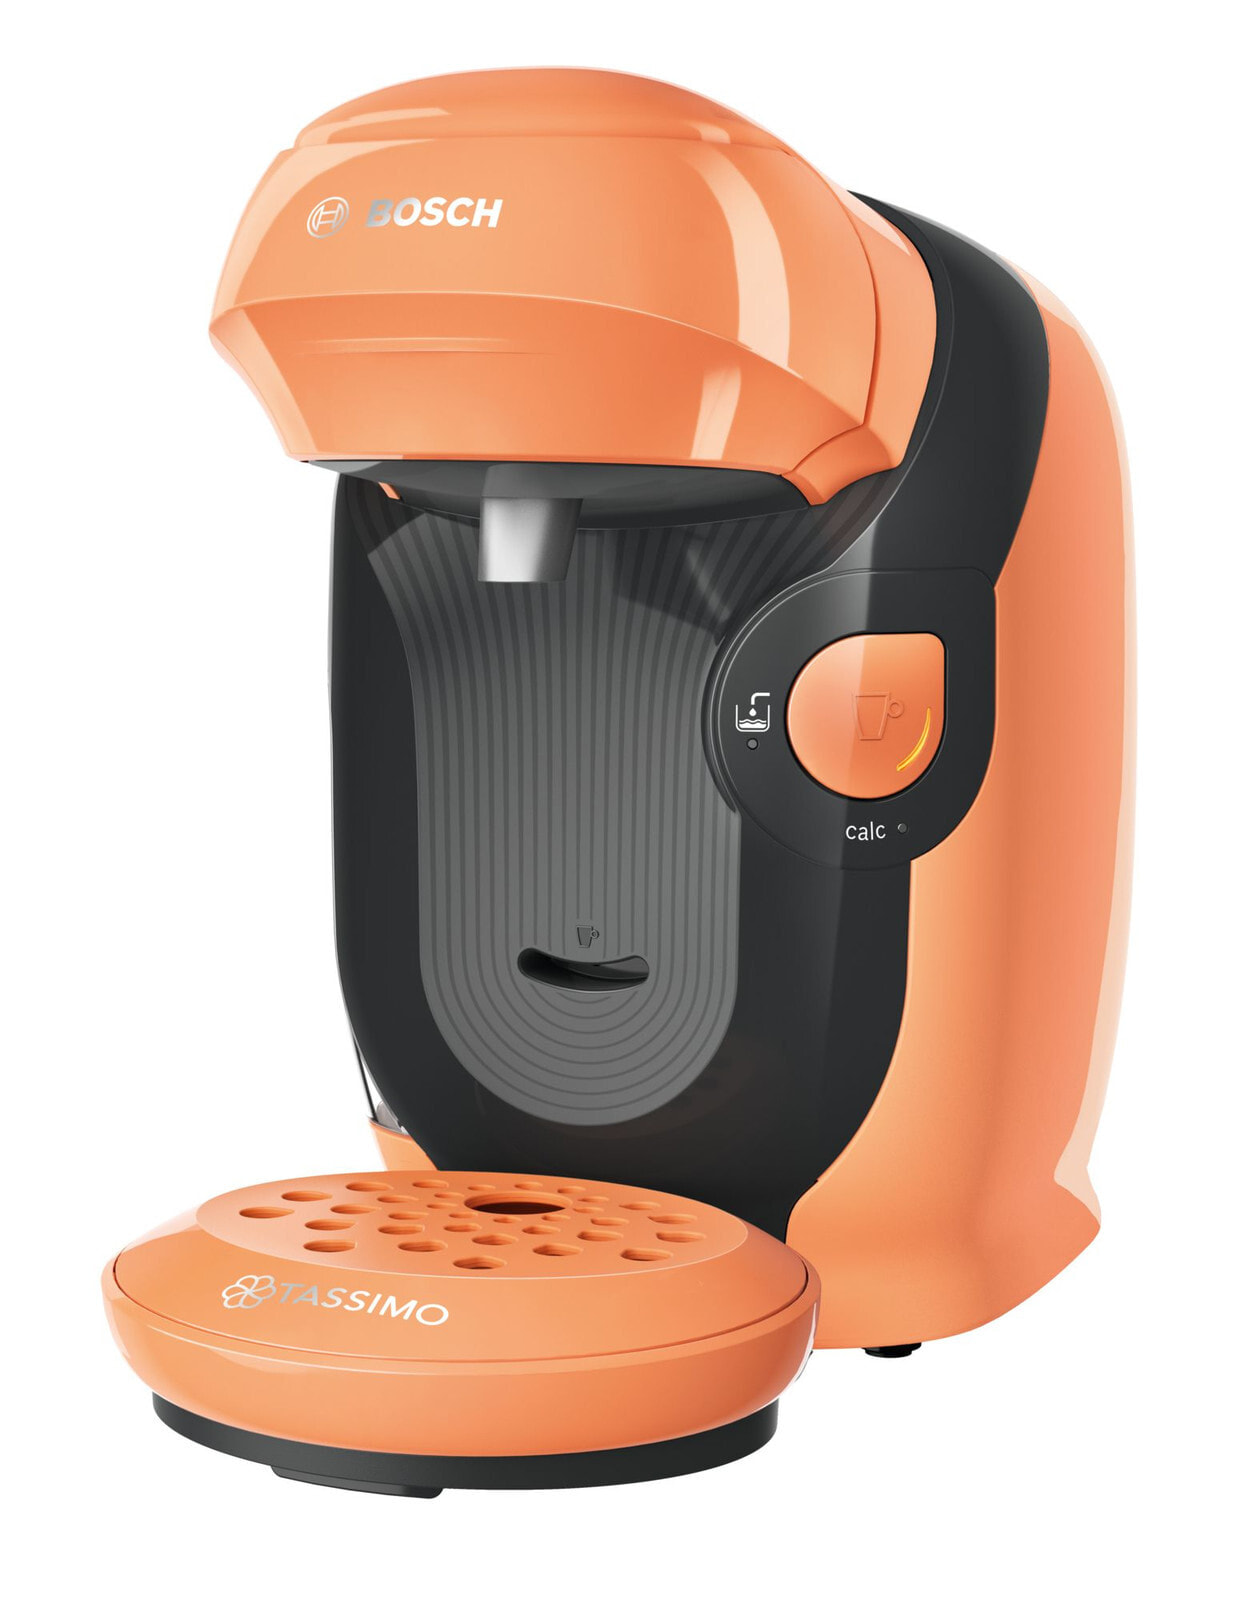 Bosch Tassimo Style TAS1106 кофеварка Капсульная кофеварка 0,7 L Автоматическая